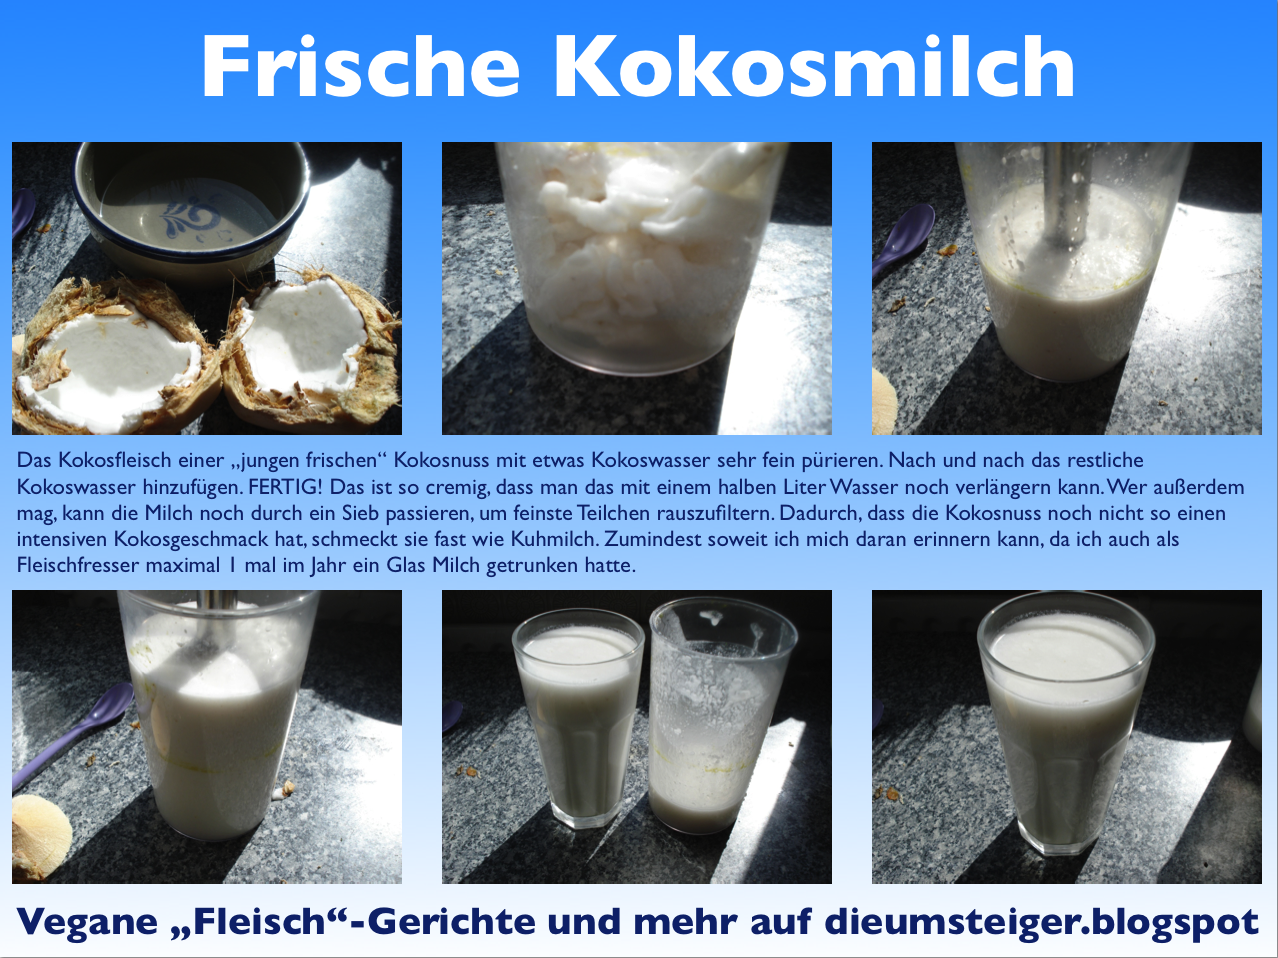 Die Umsteiger-weg vom Fleisch!: Frische Kokosmilch selbst gemacht!